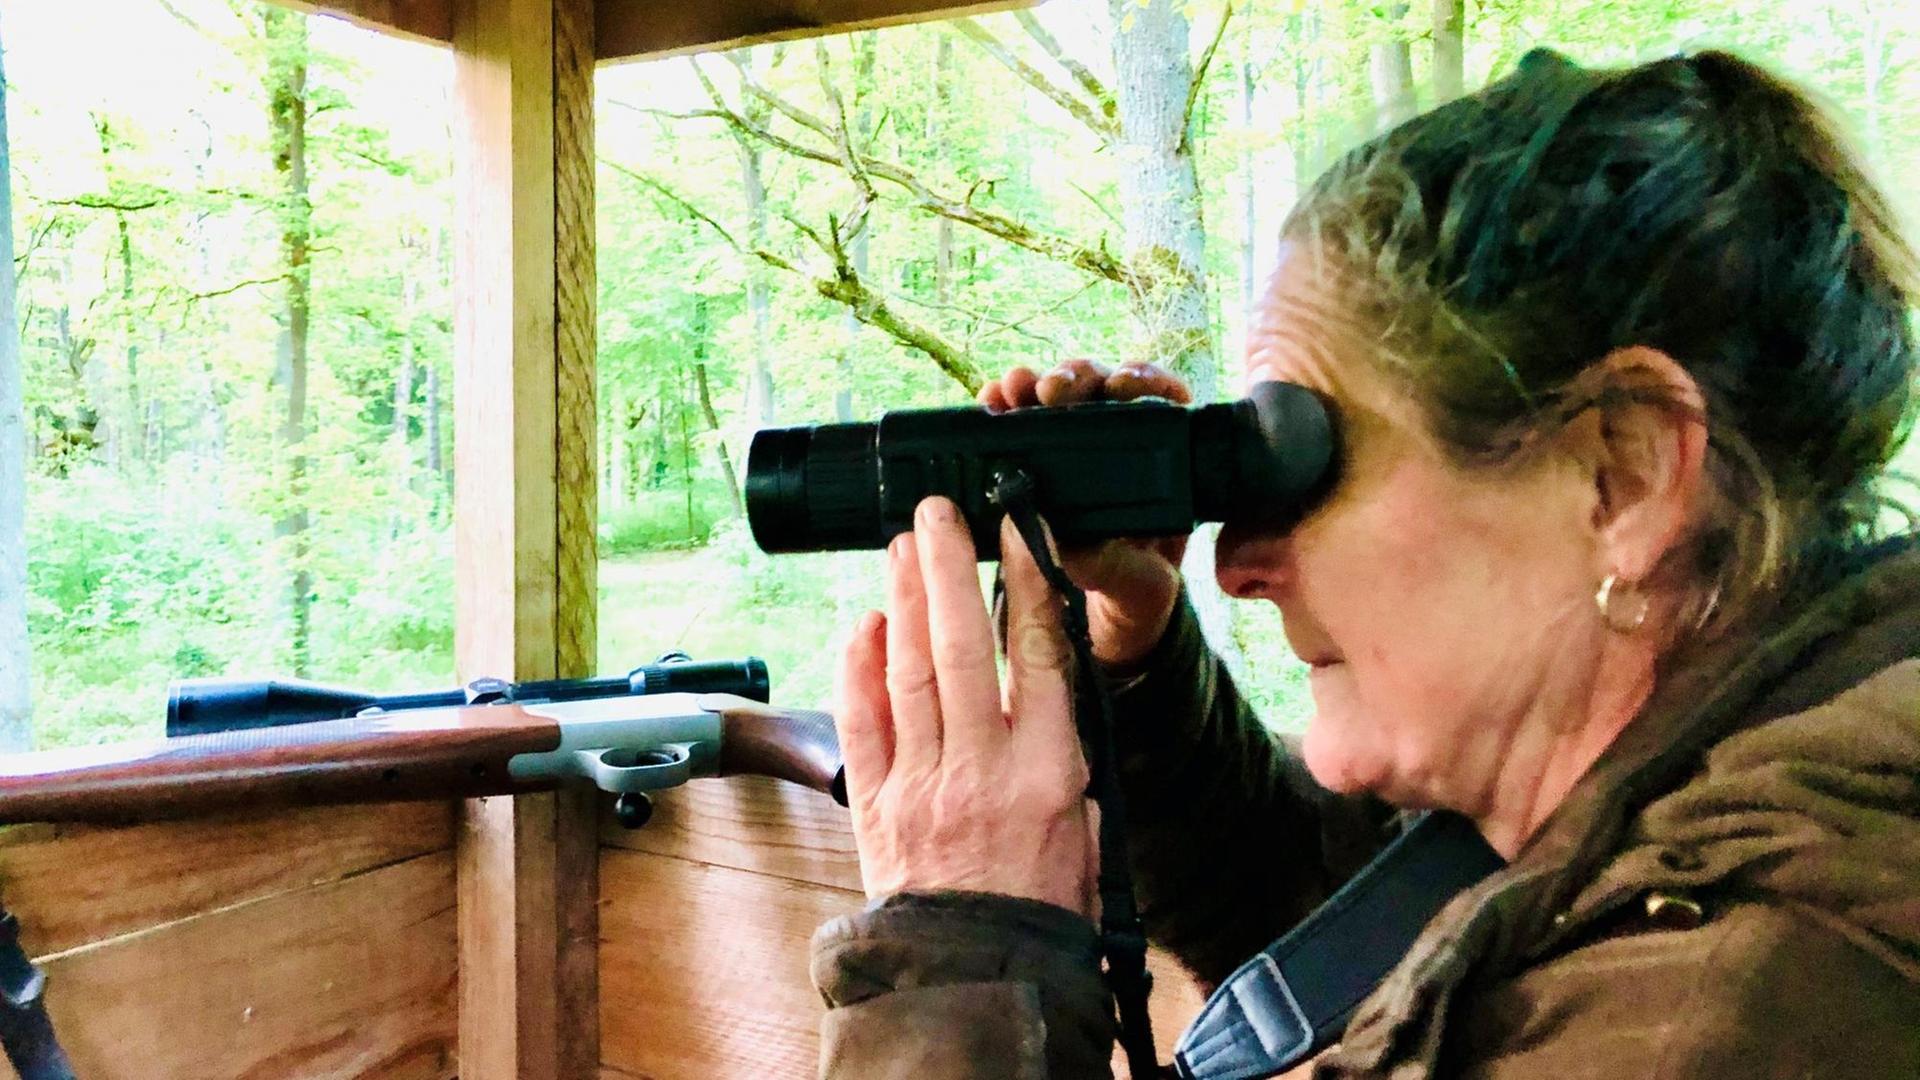 Jägerin Sabine Zuckmantel schaut auf dem Ansitz durchds Fernglas. Im Hintergrund ist ihr Gewehr zu sehen.